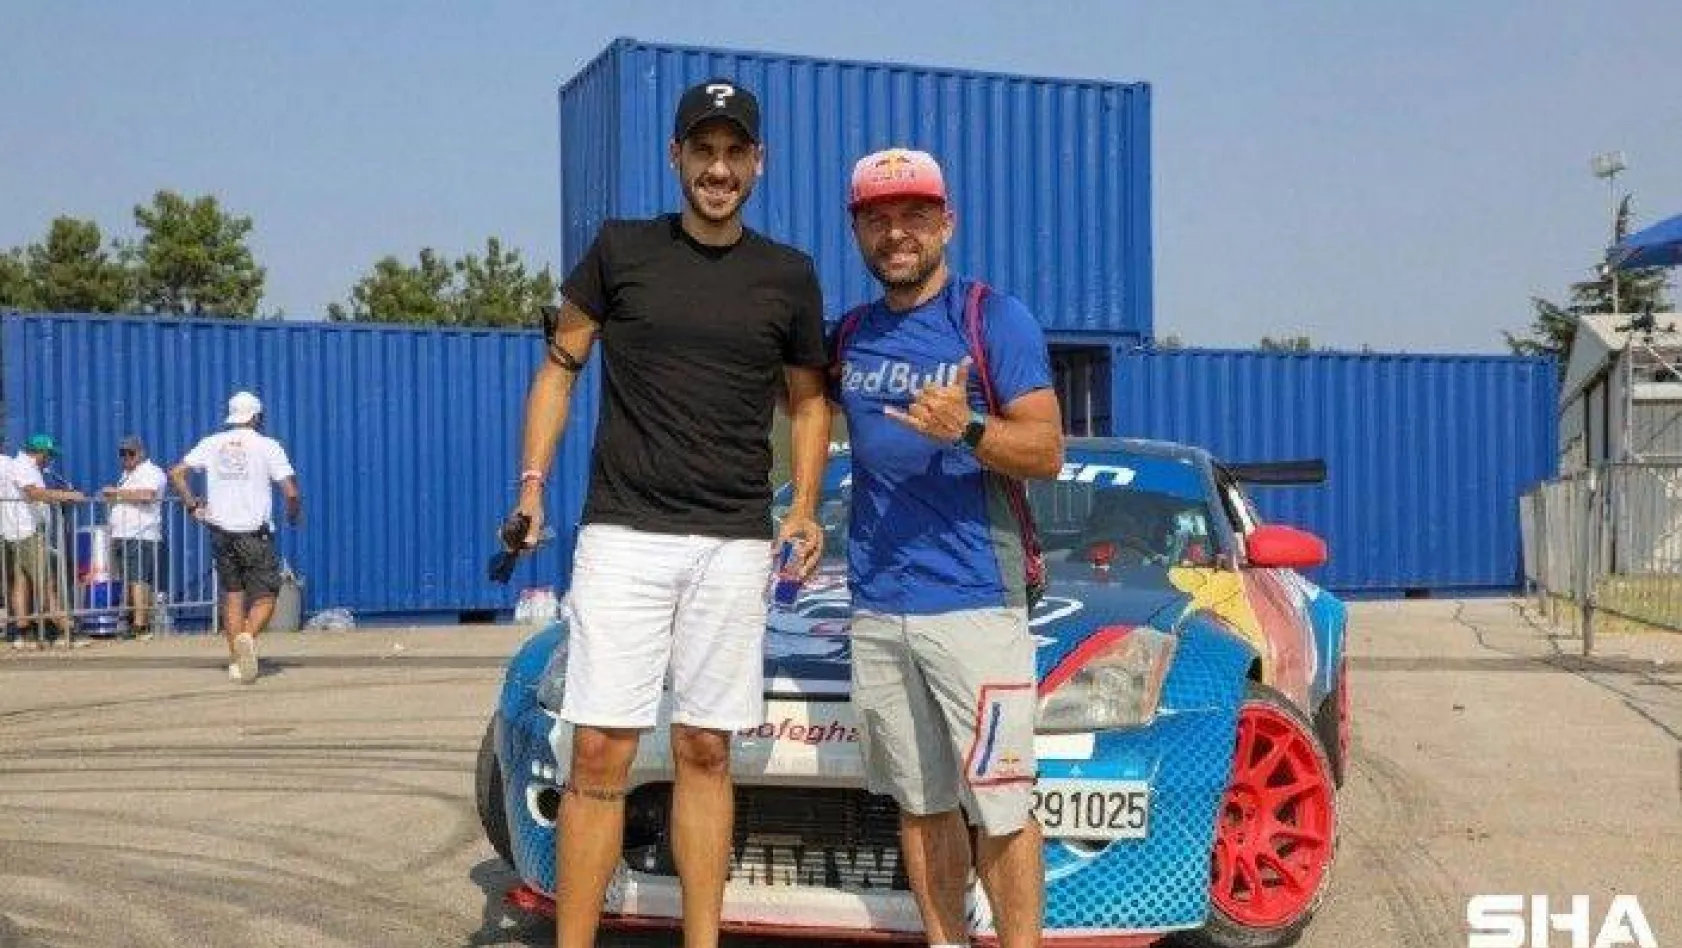 Ünlü oyuncu Ümit Erdim Red Bull sporcusu Abdo Feghali ile drift yaptı